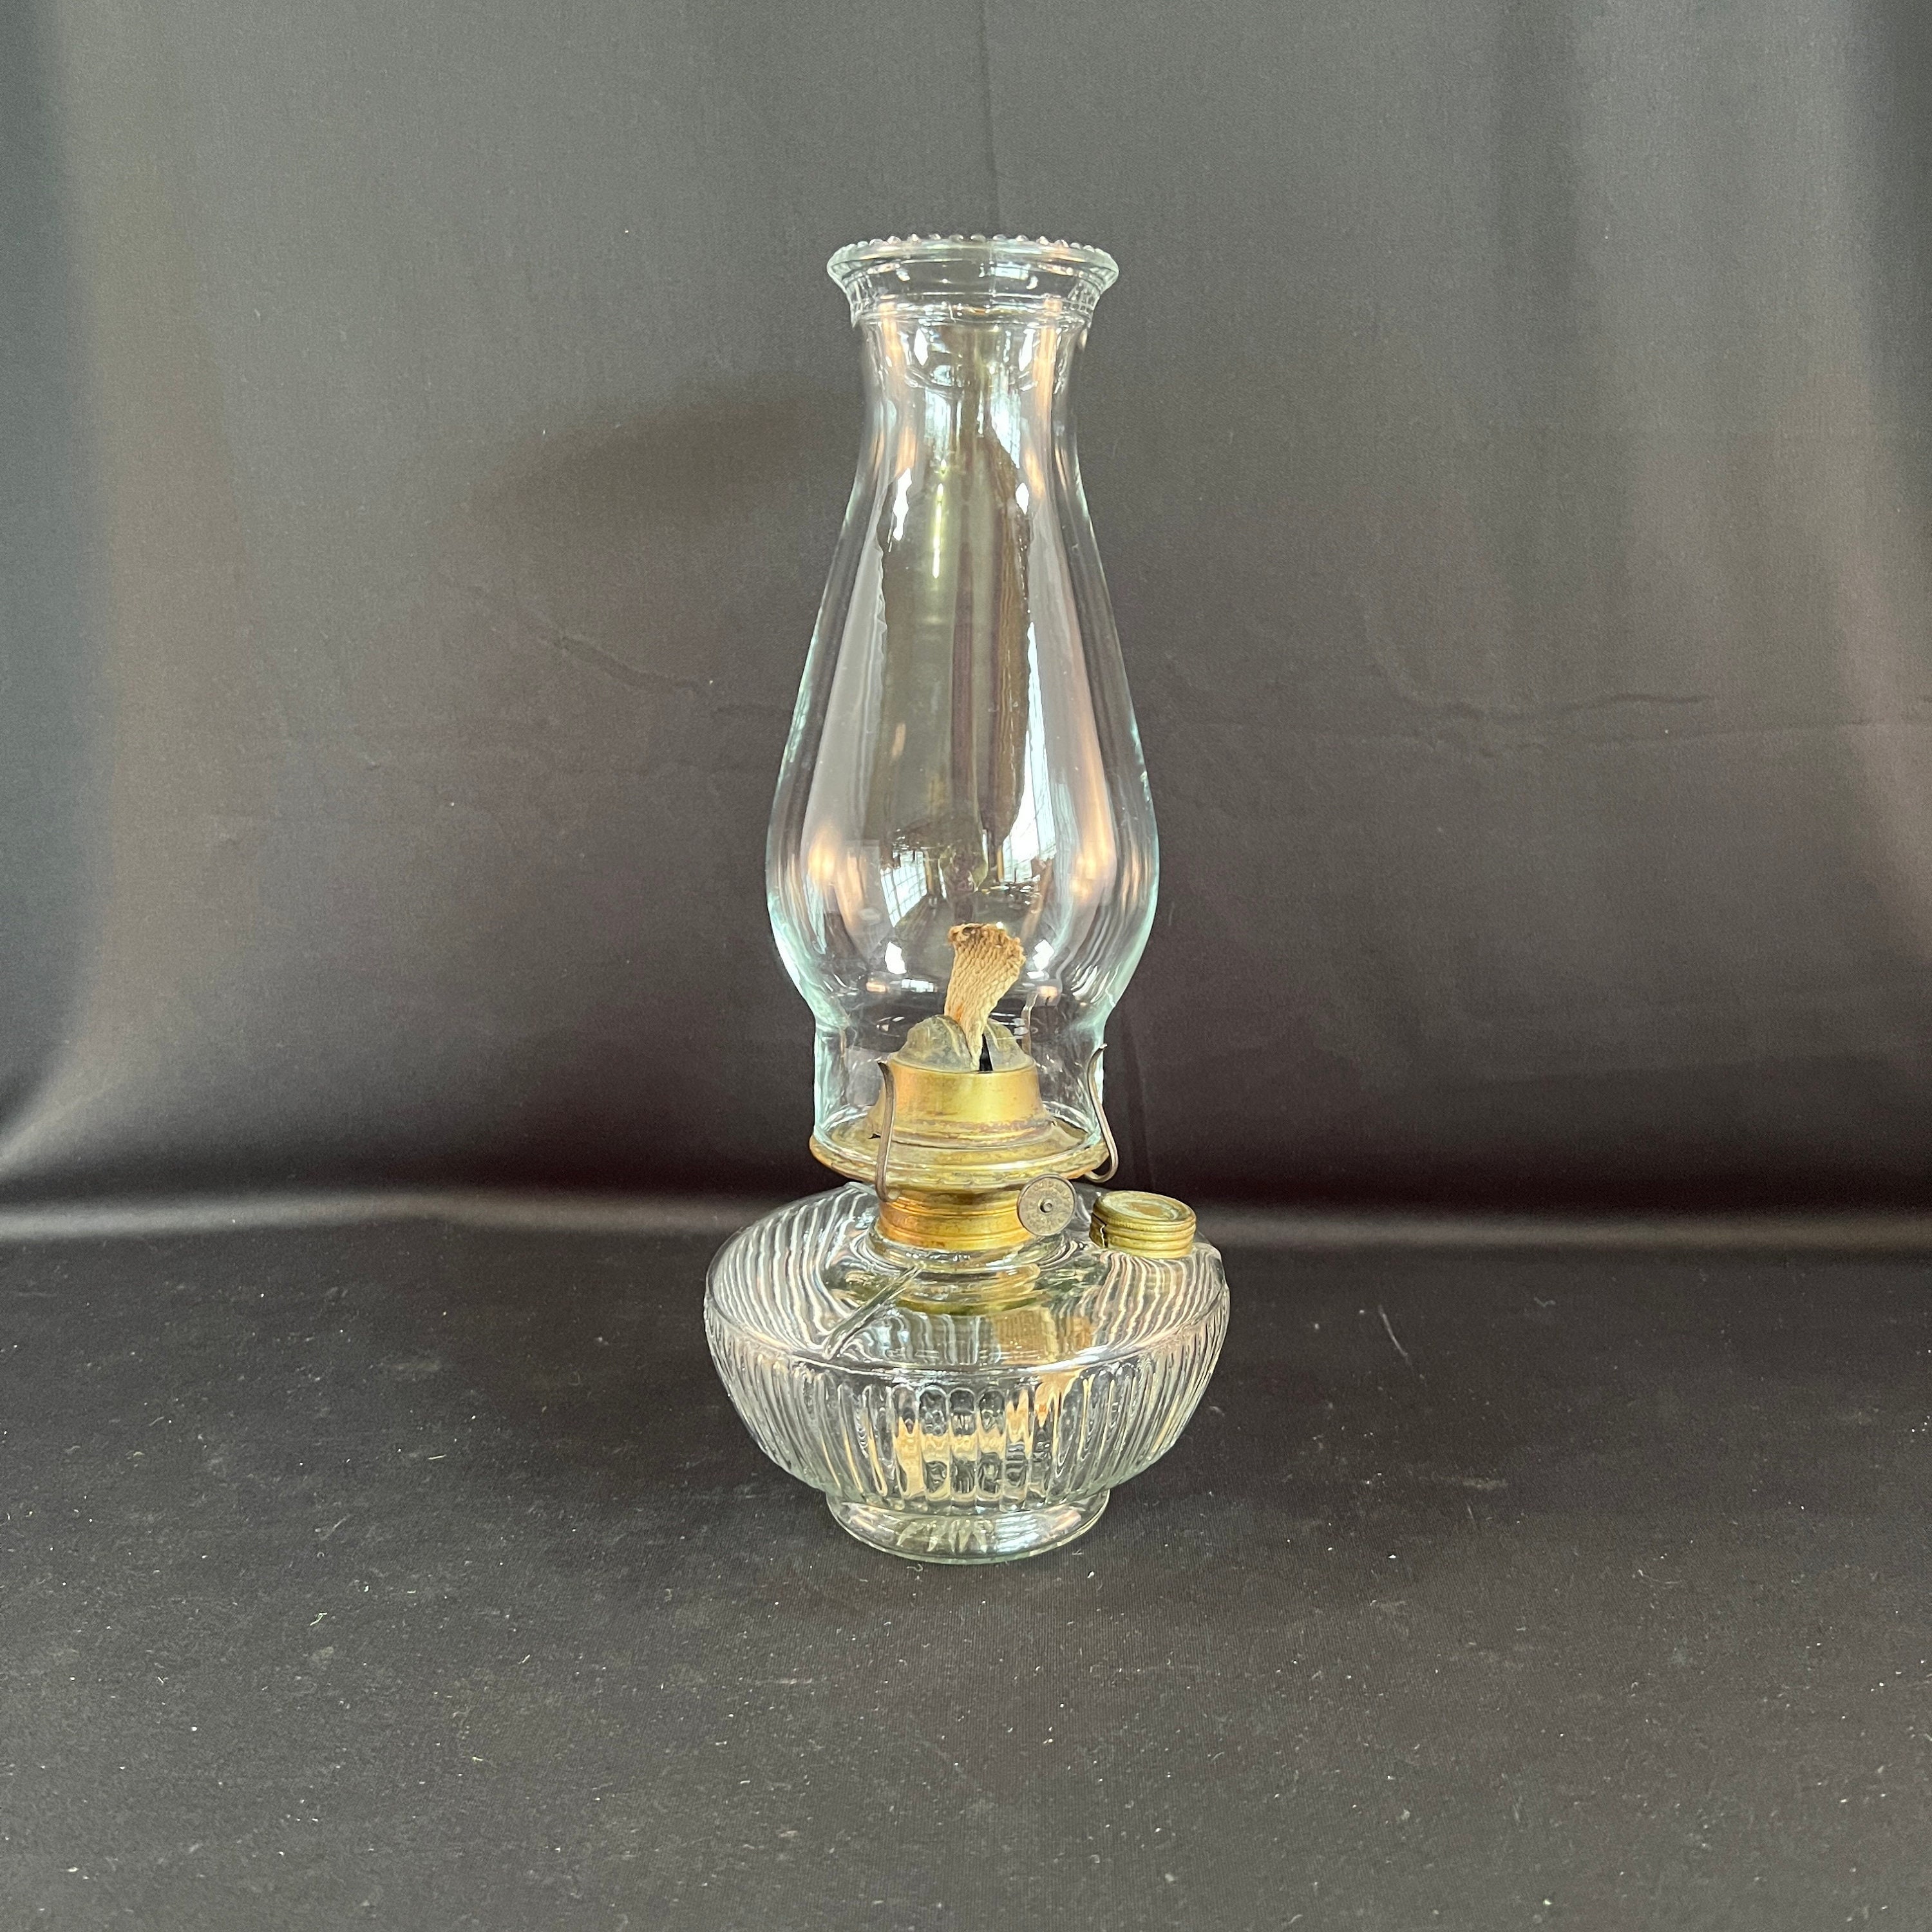 Vintage Glass Chimney Oil Lamp Shade Gas Kerosene Light Antique Old 5"H 42mmBase 